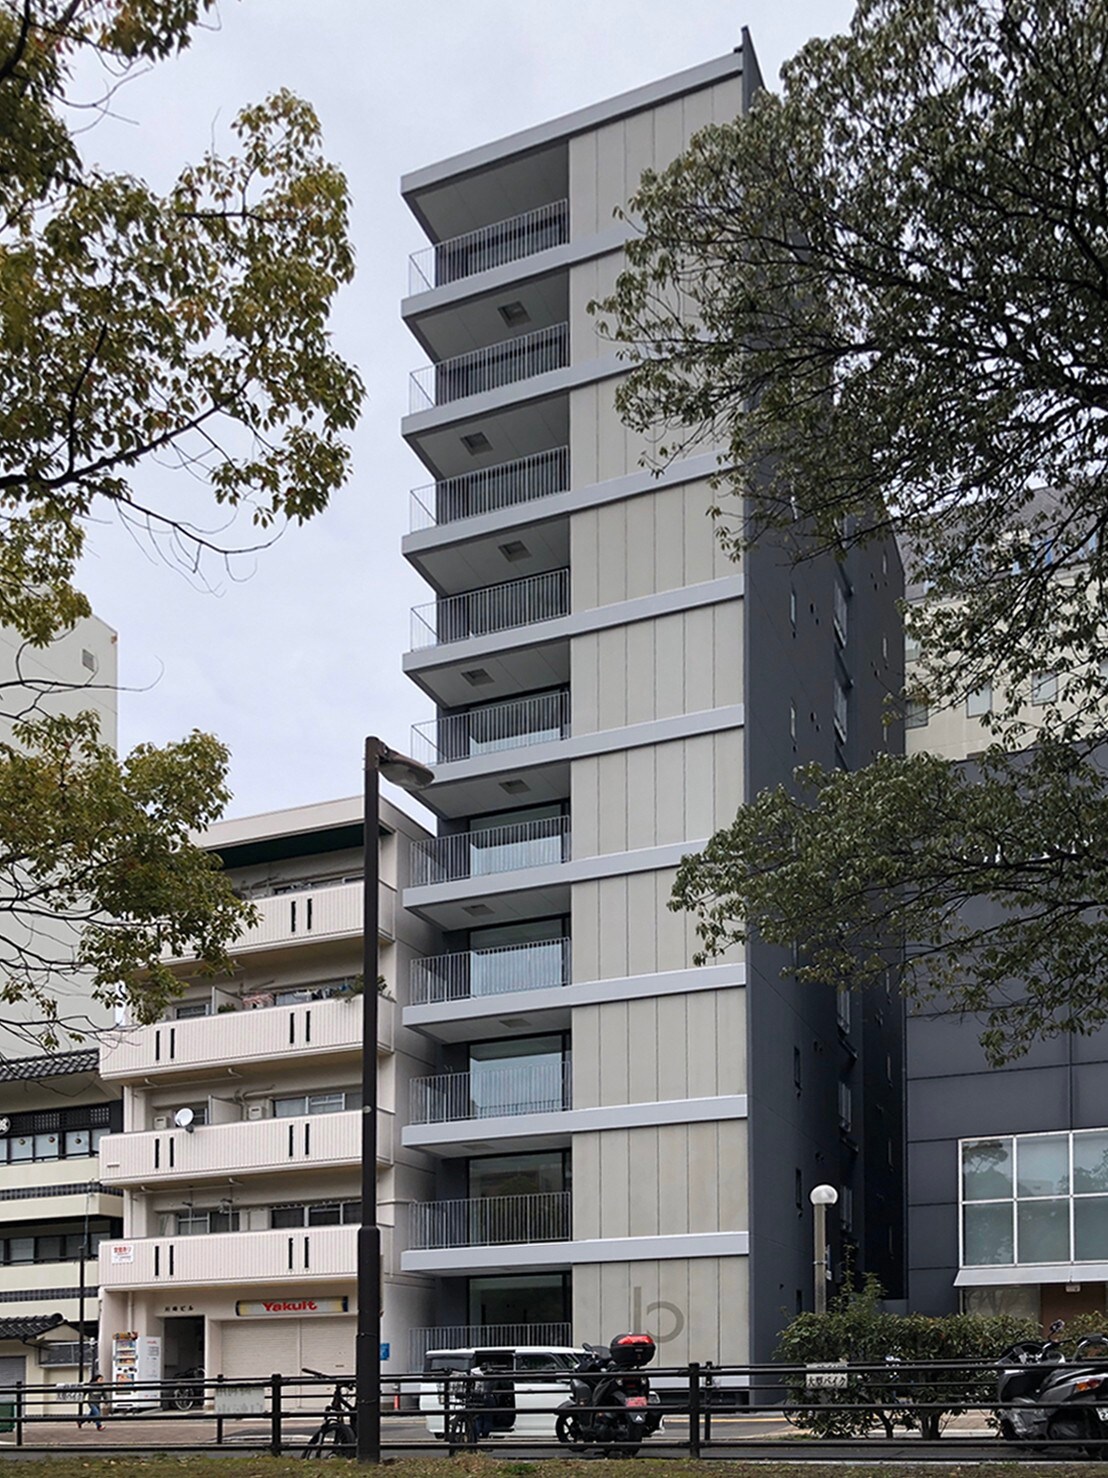 bhotel1002高层公寓著名广岛通6人